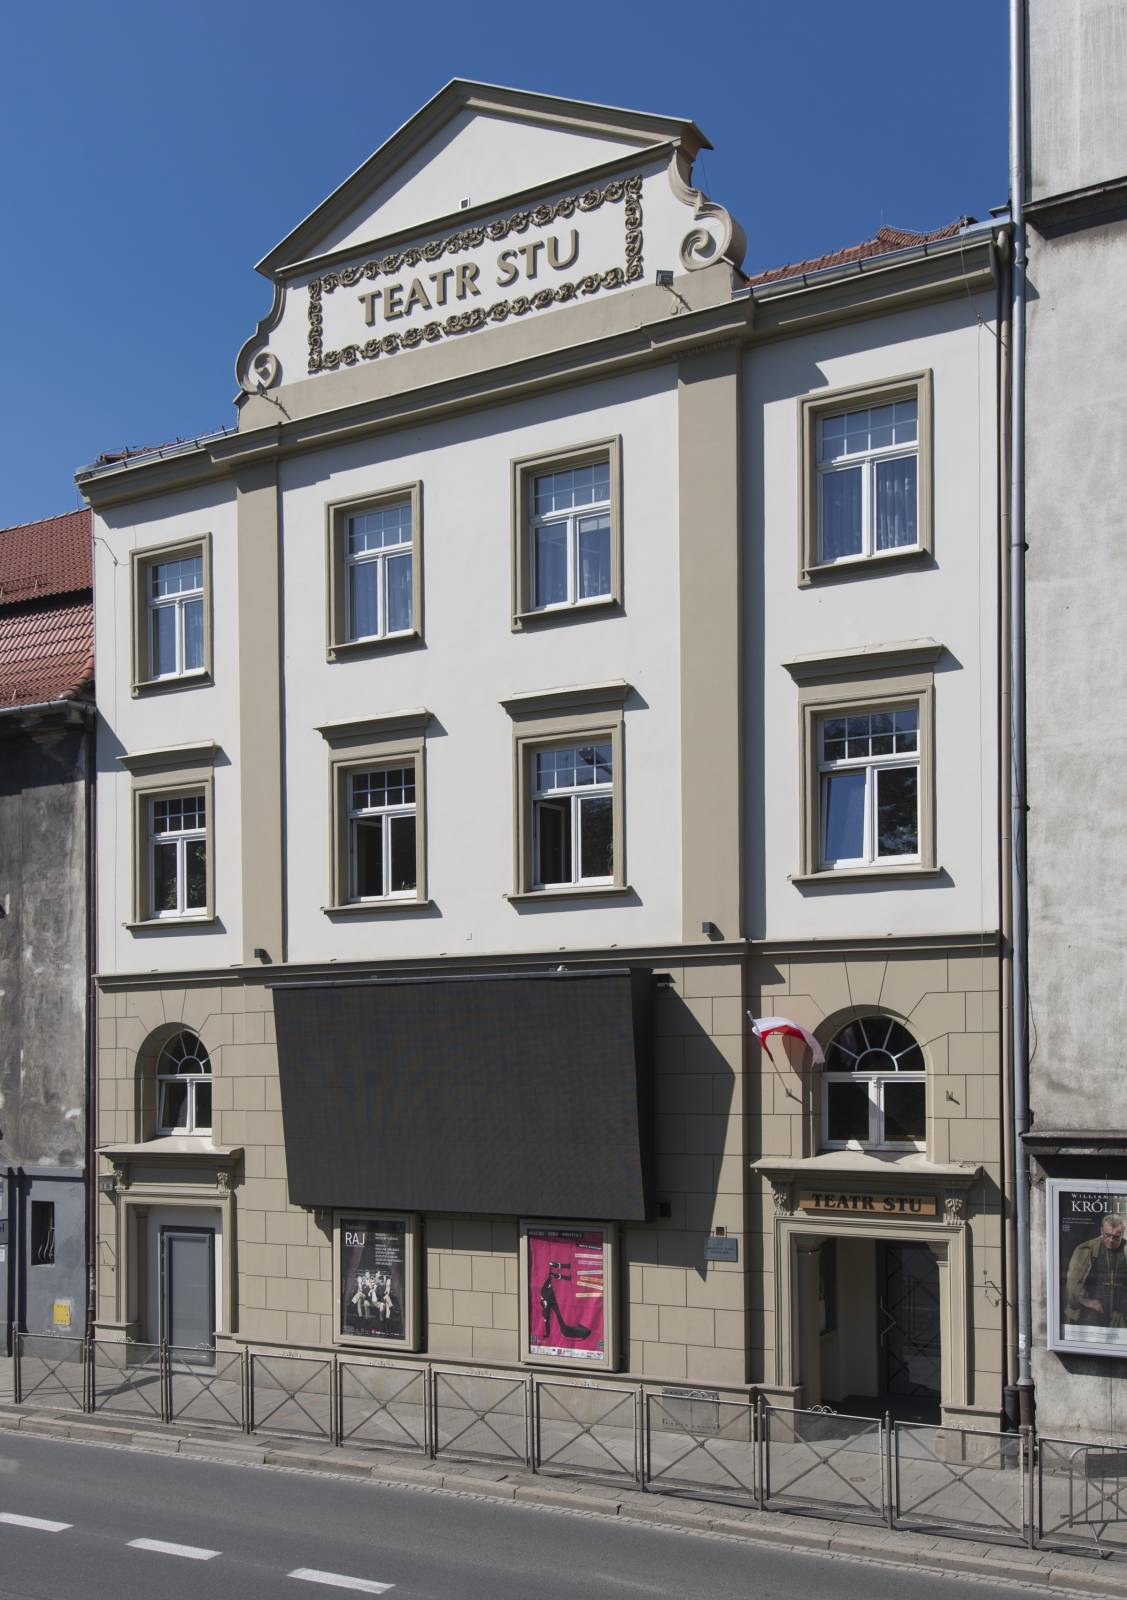 Krakowski Teatr Scena STU